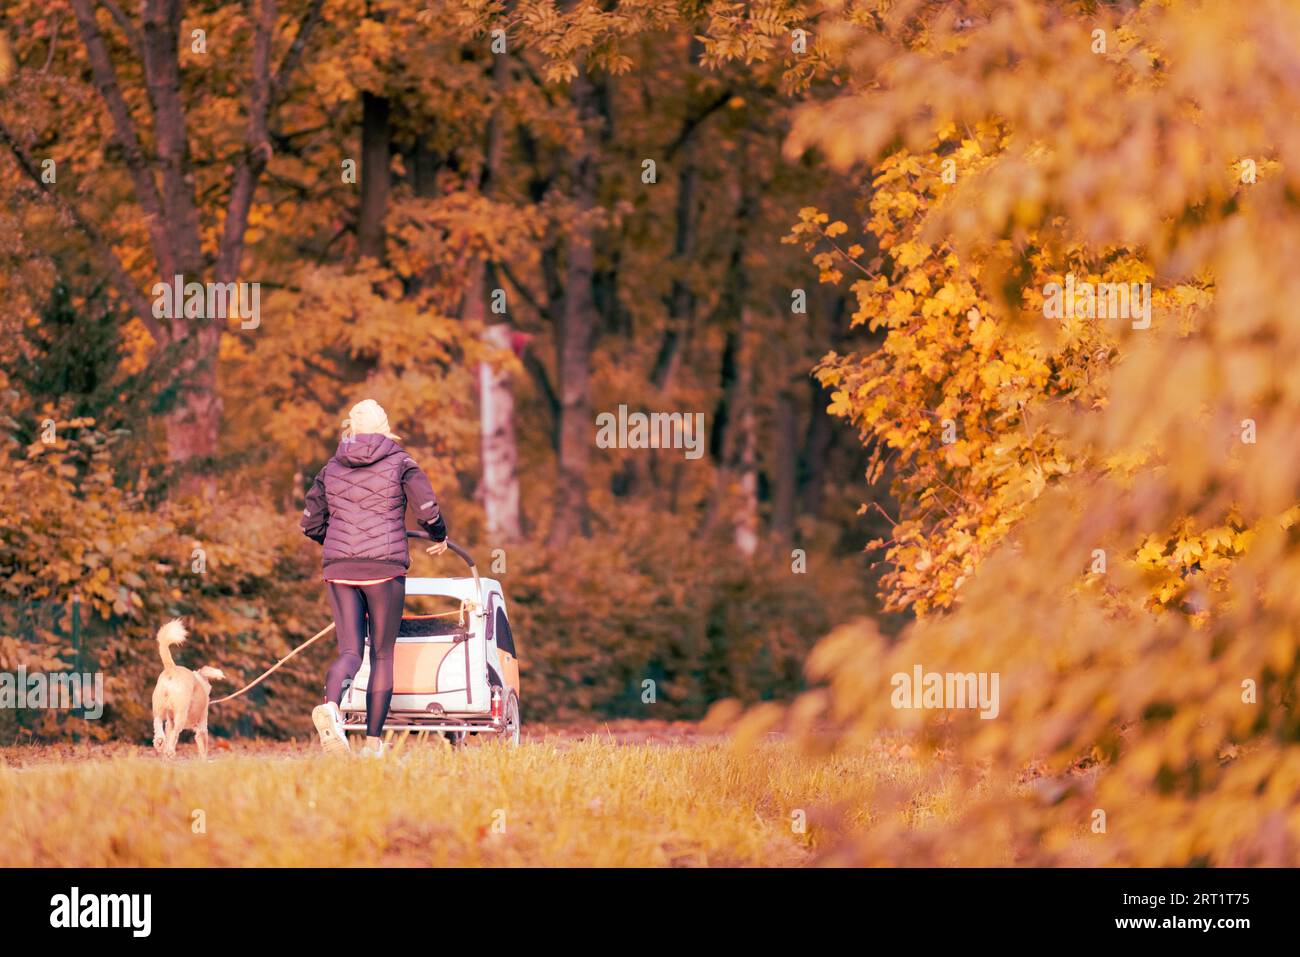 Femme méconnaissable vue de derrière faisant une promenade avec son chien en laisse et une poussette de bébé tôt le matin avec le feuillage coloré des arbres en automne Banque D'Images